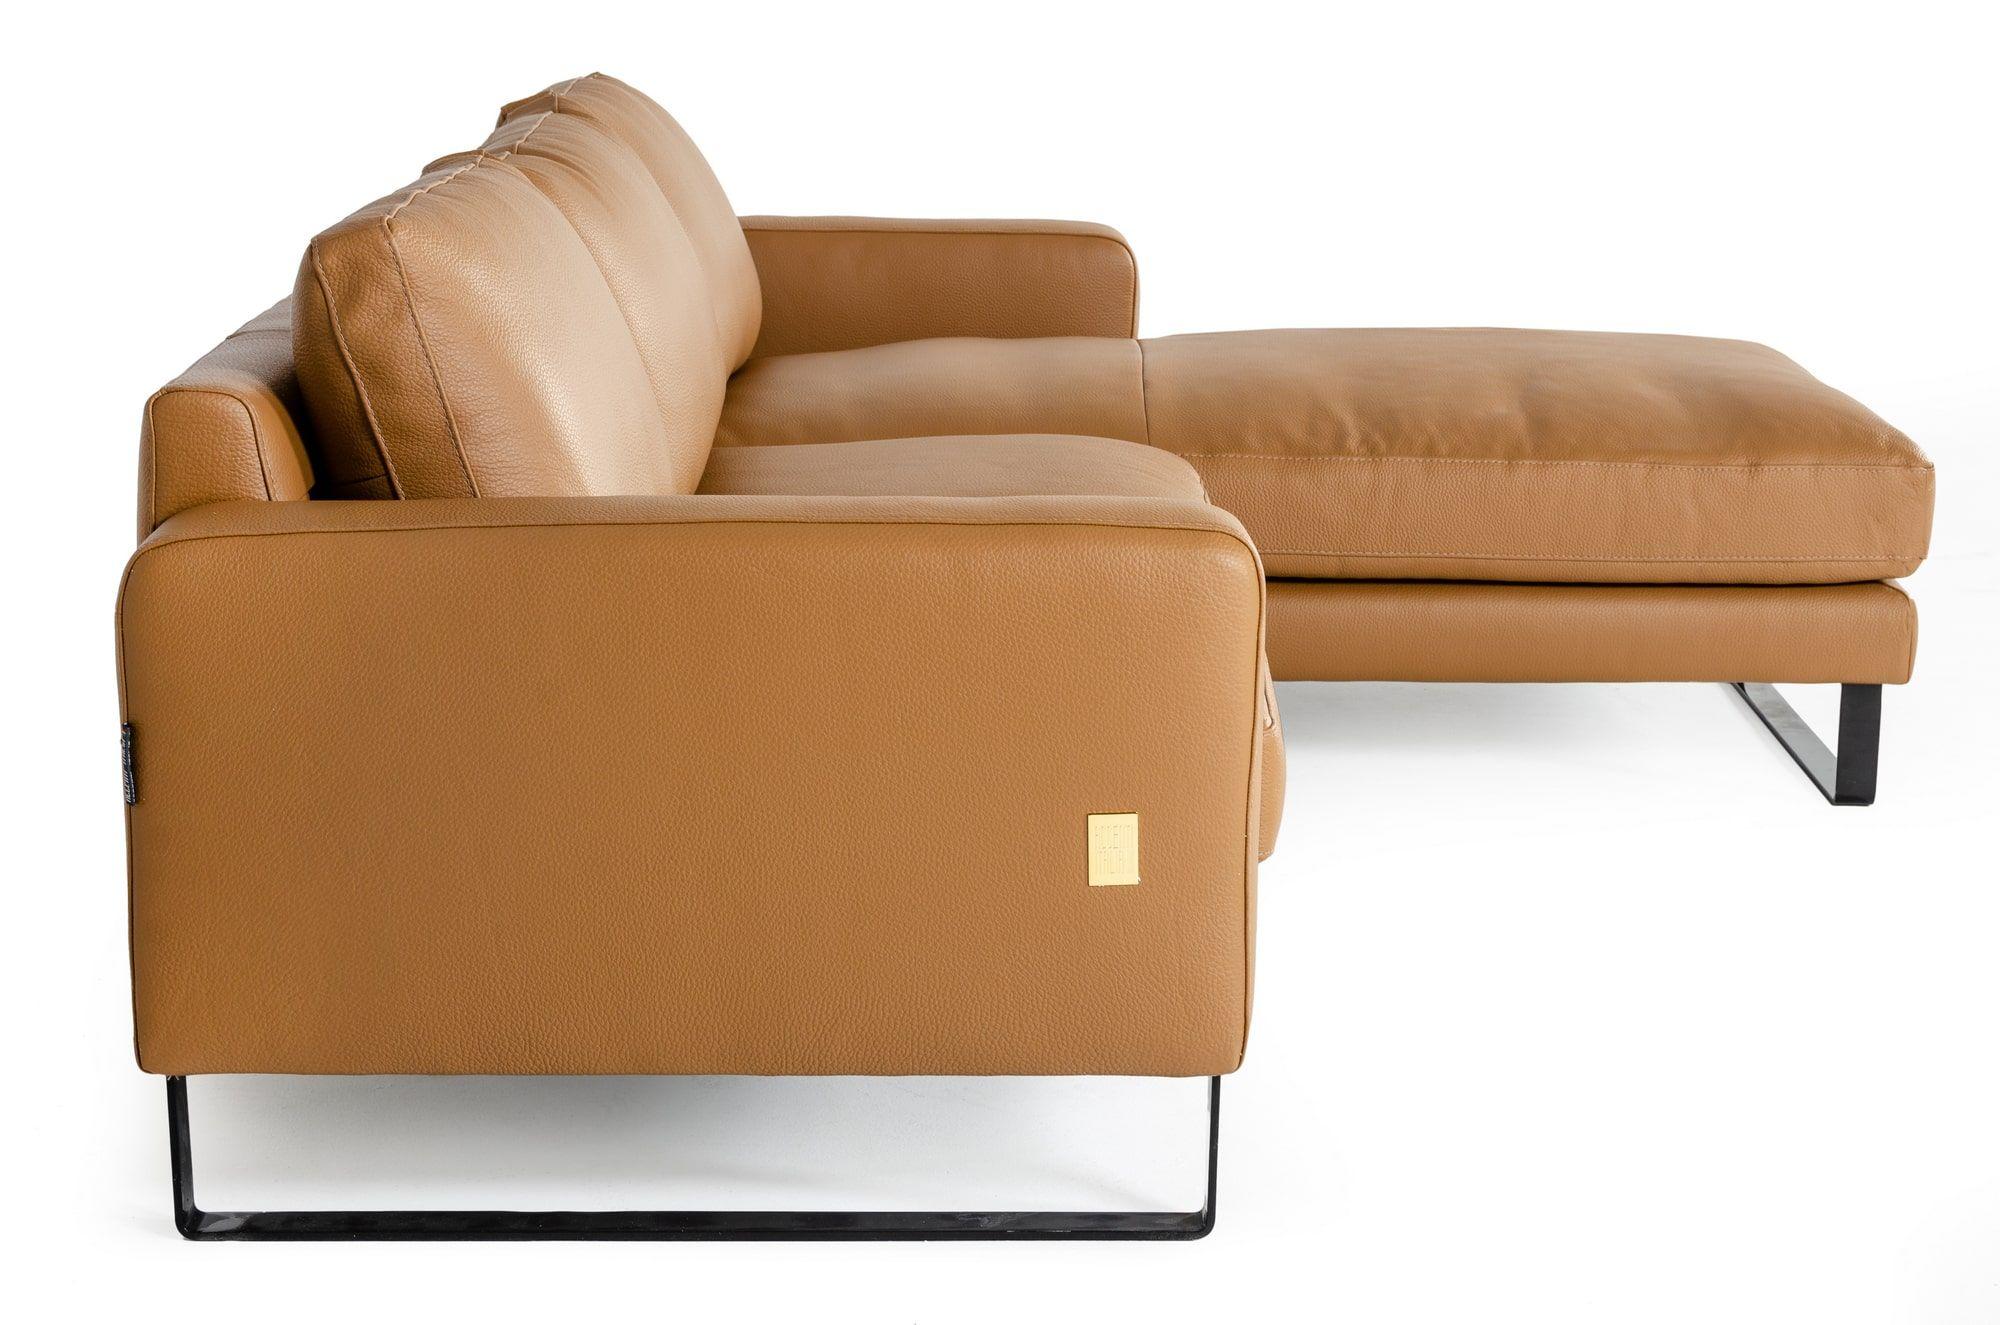 

    
VGDDSHINE VIG Furniture Sectional Sofa
